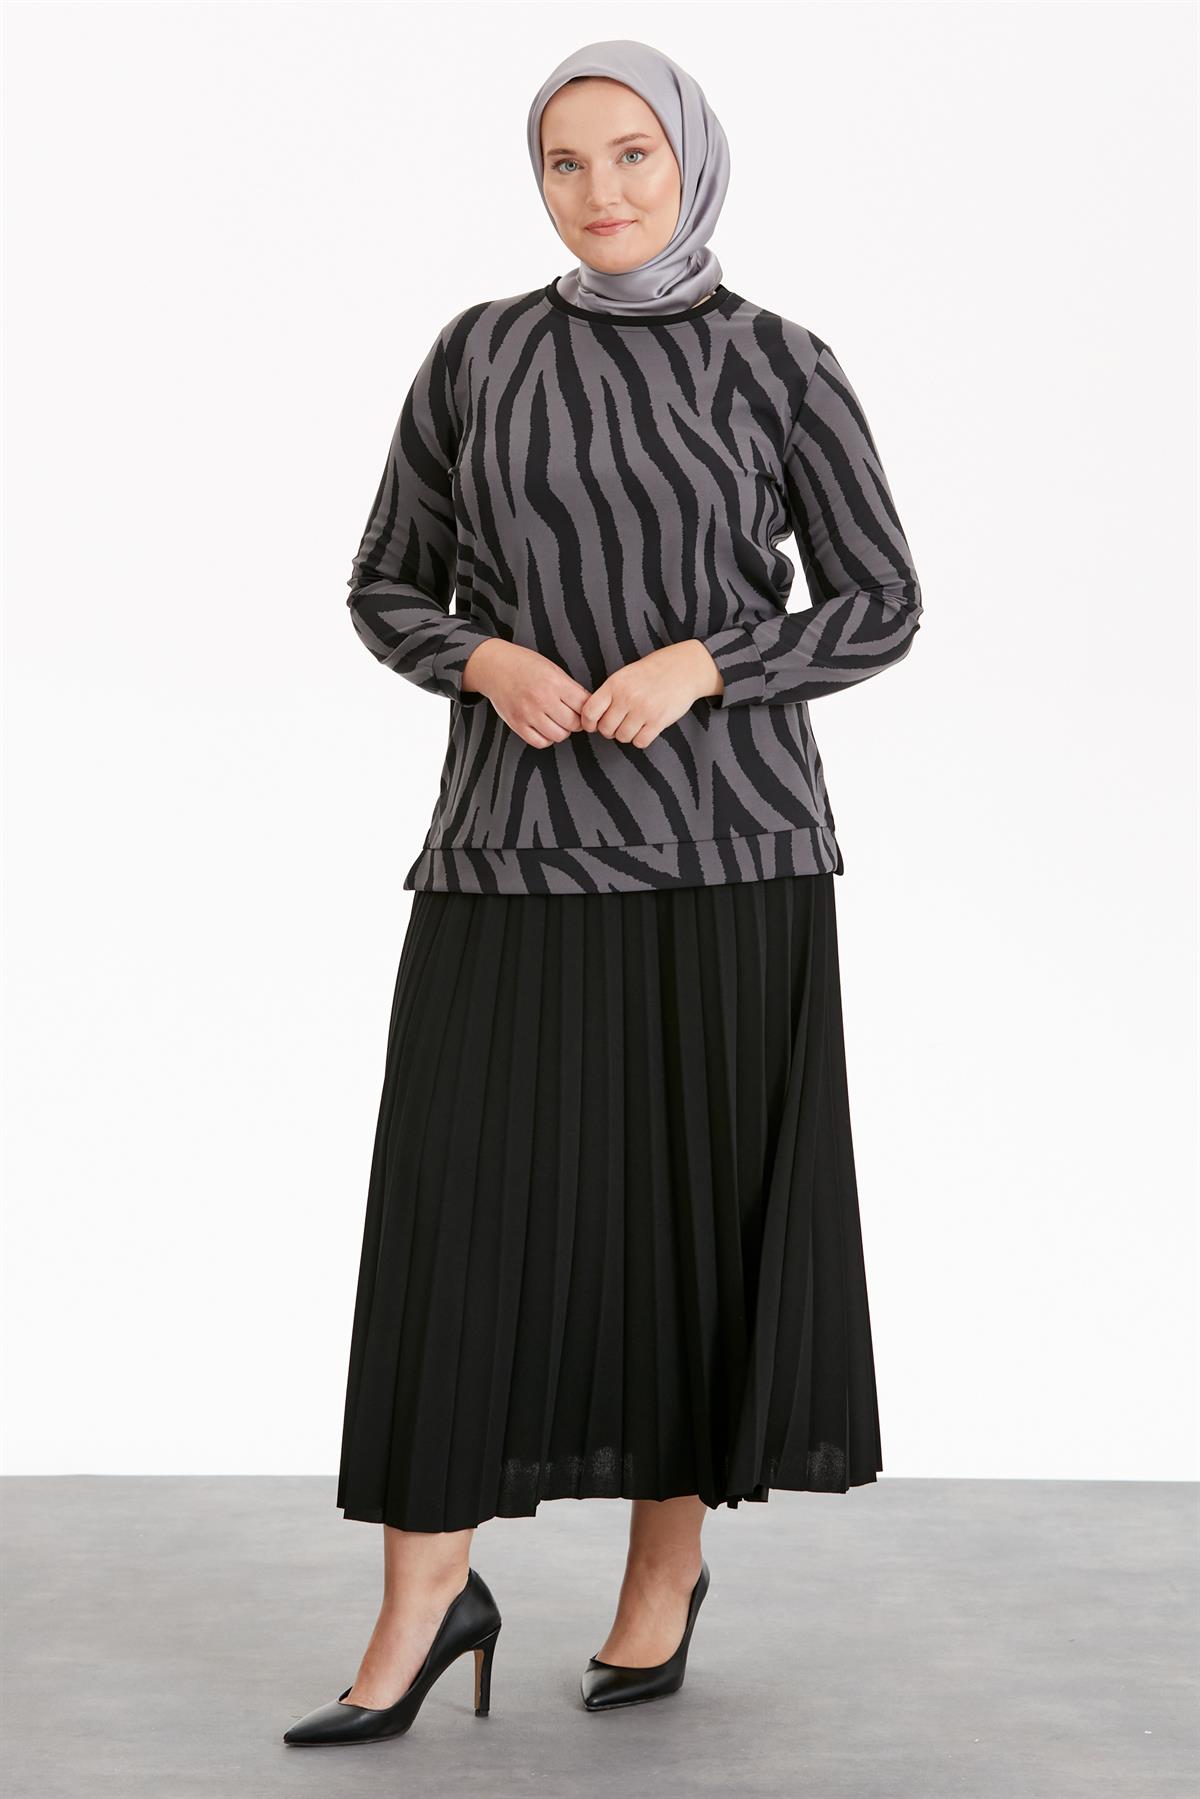 Tuğba Kadın Büyük Beden Giyim Modelleri | Tuğba Online